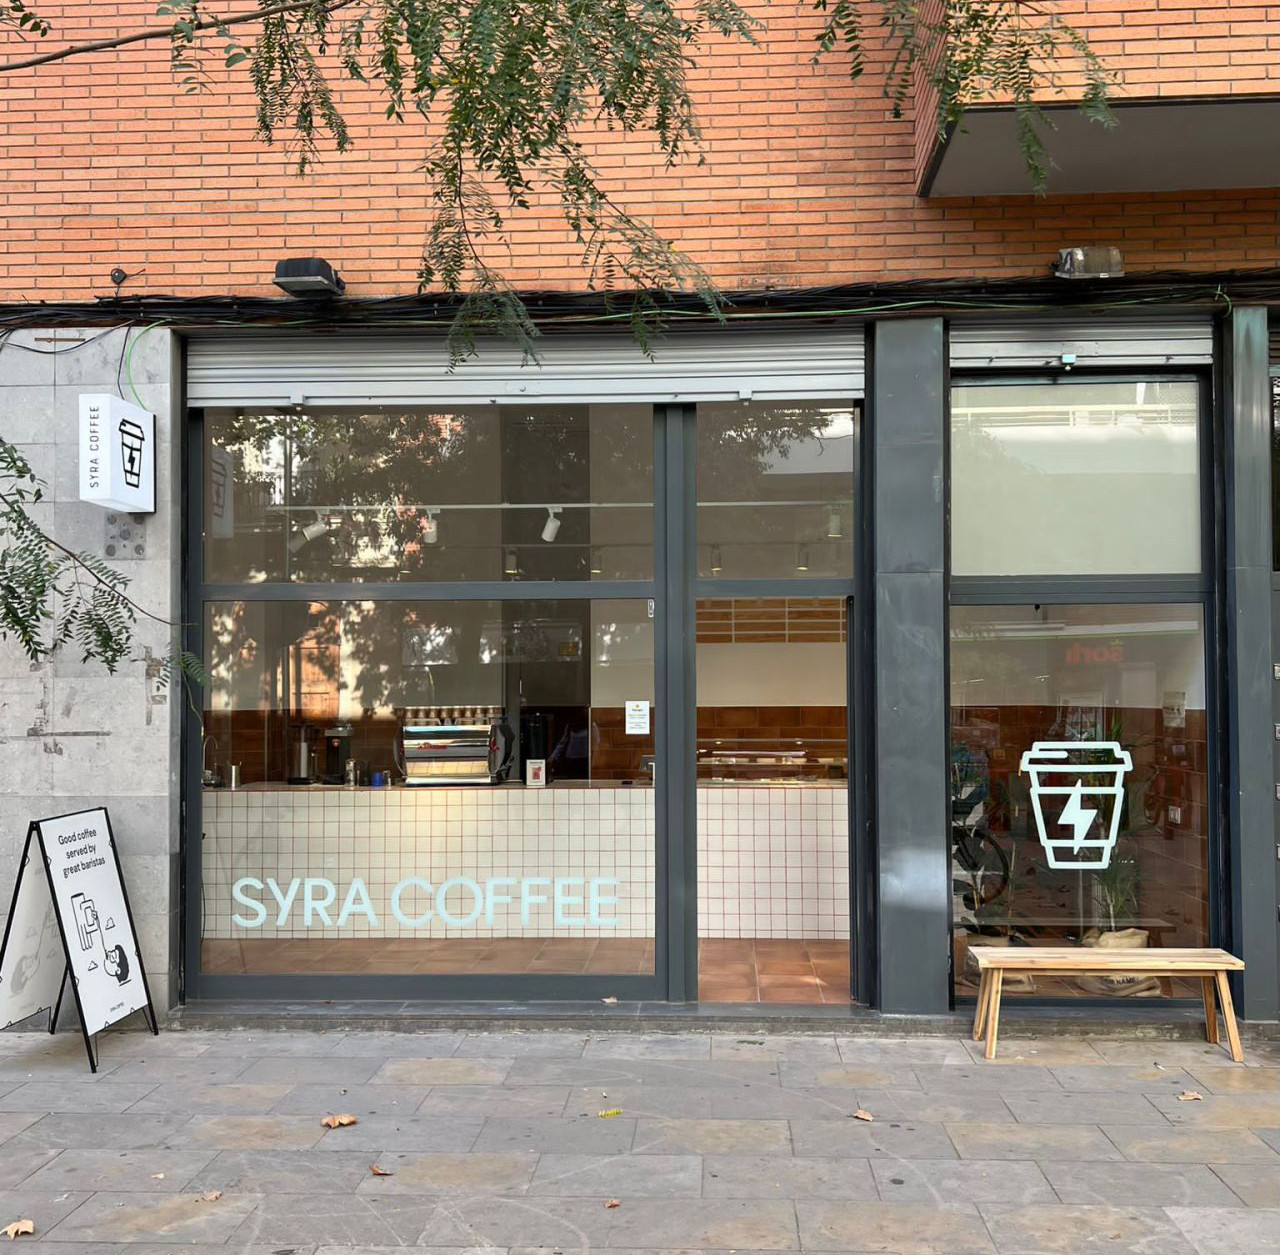 ​Syra Coffee inaugura su nuevo local en Barcelona, en el barrio de Poblenou